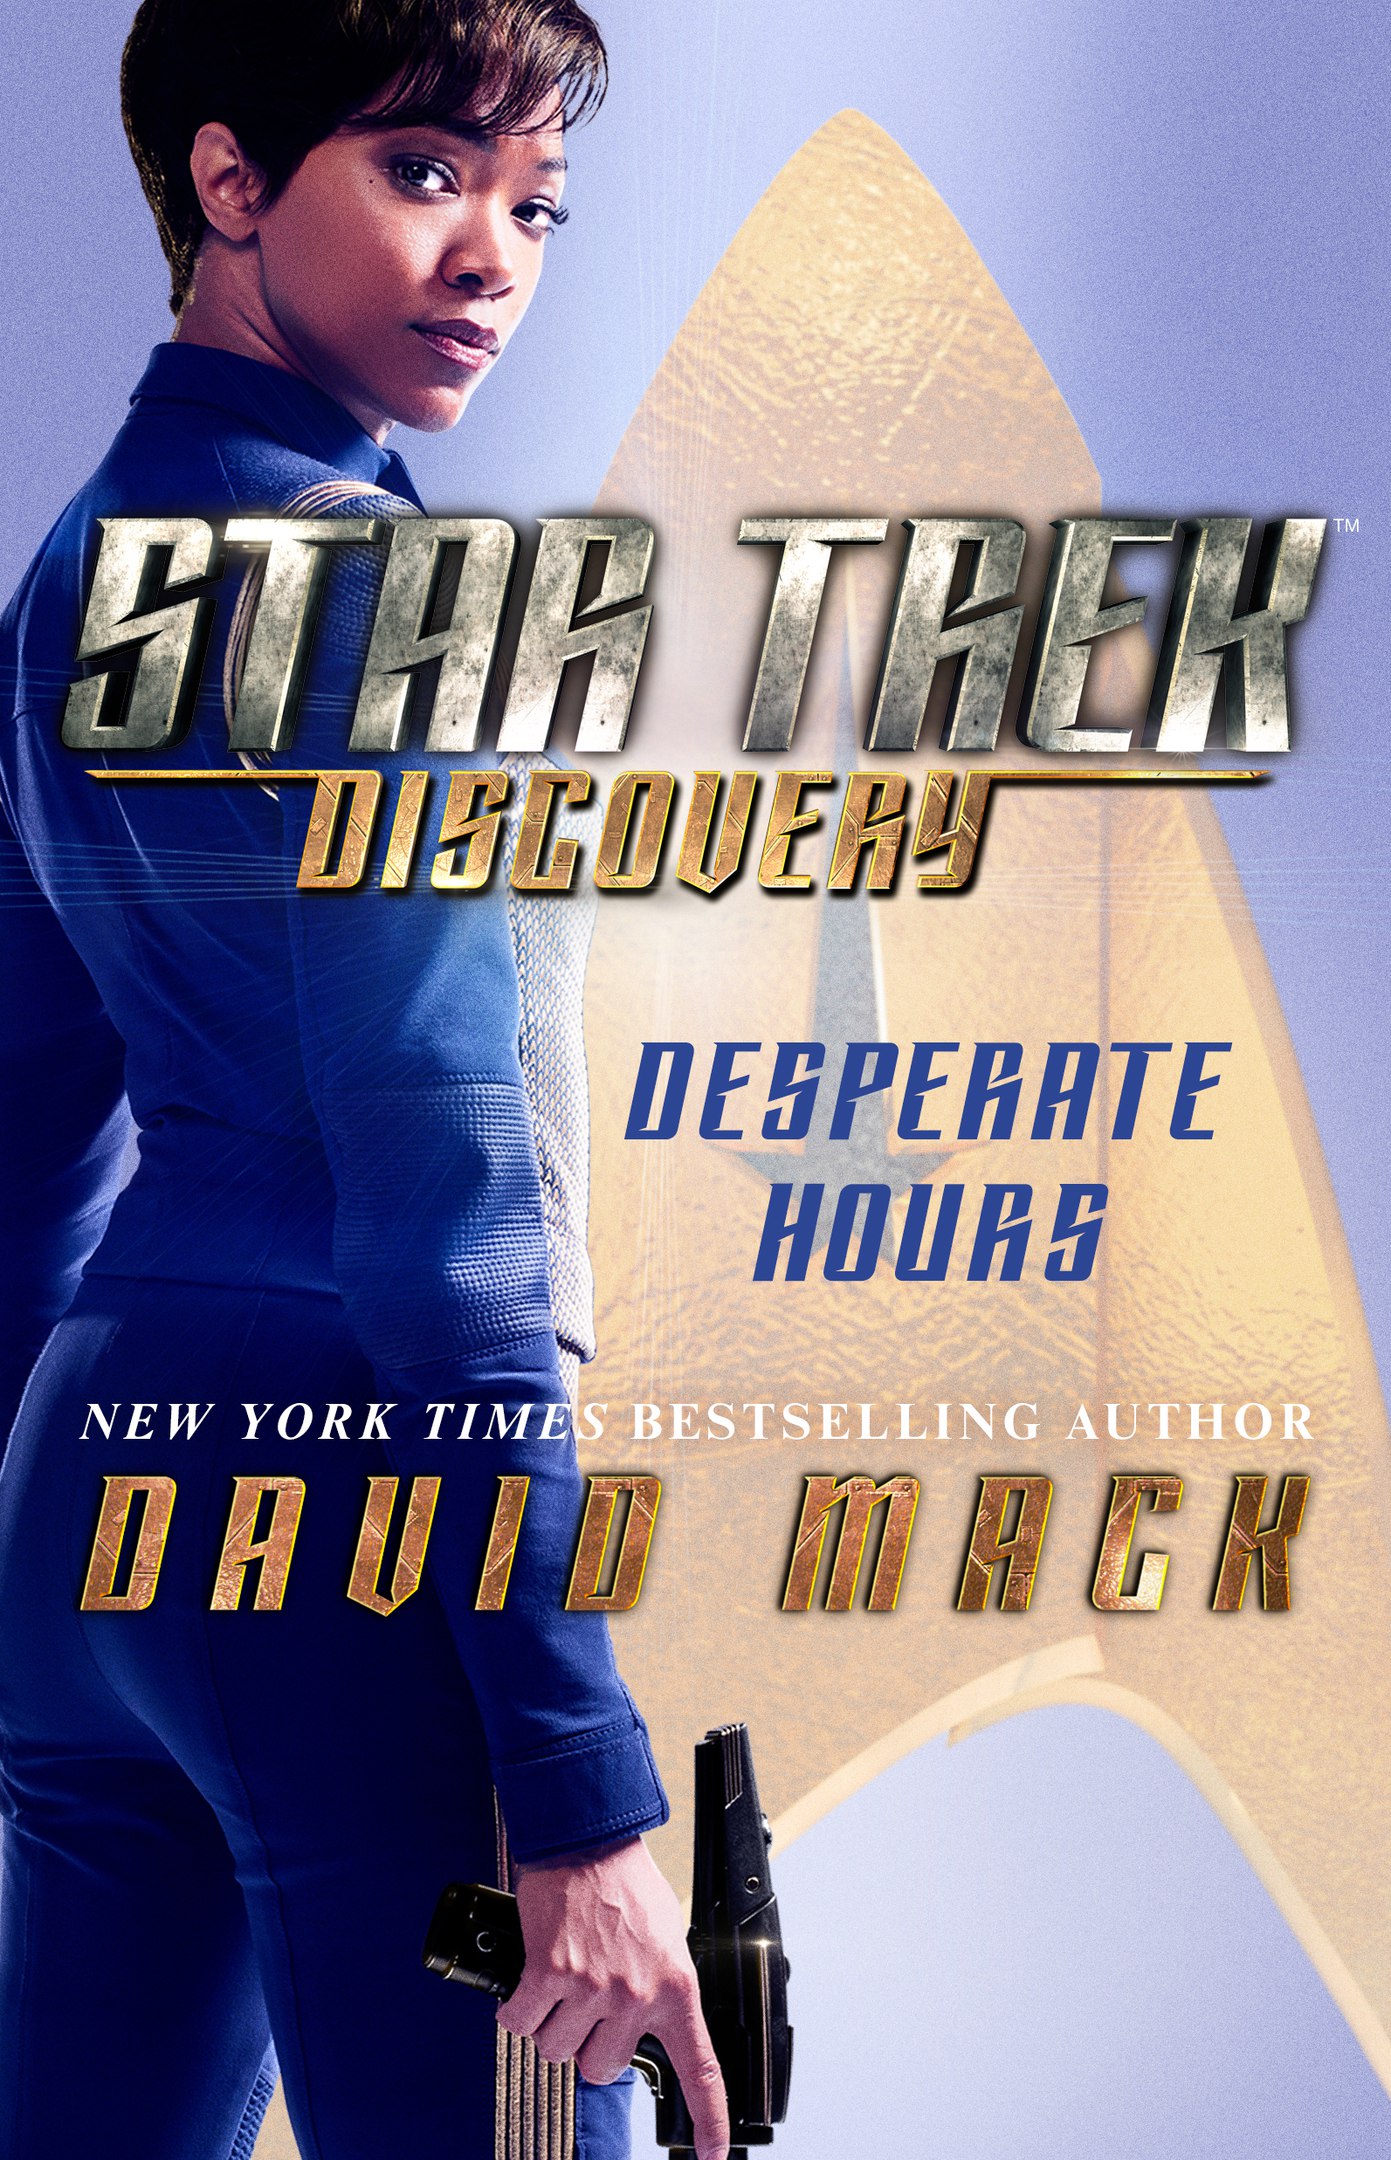 David Mack – Star Trek Discovery